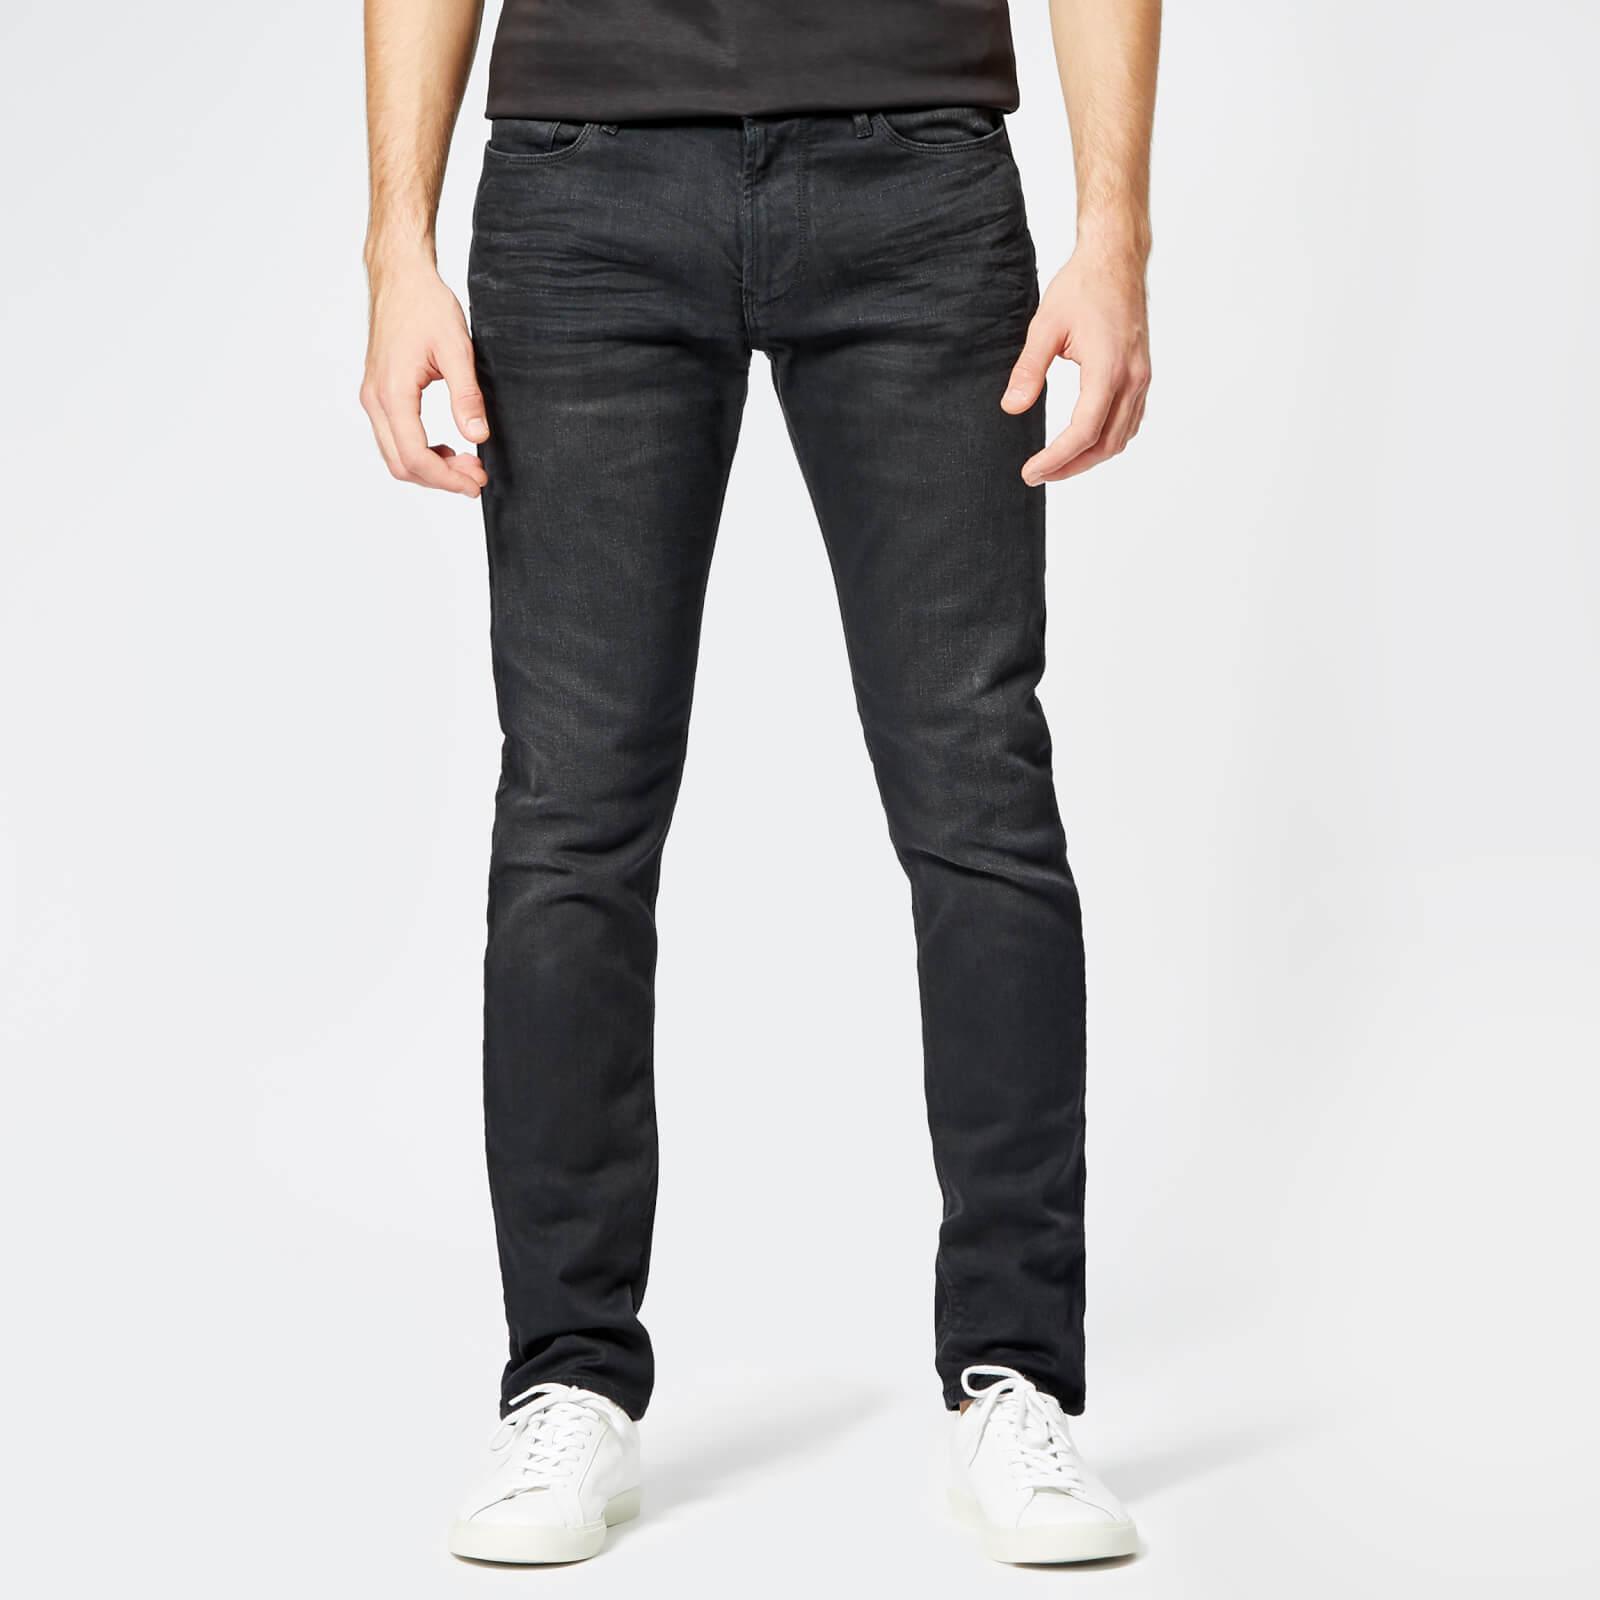 Emporio Armani 5 Pocket Skinny Denim Jeans in Black for Men - Lyst